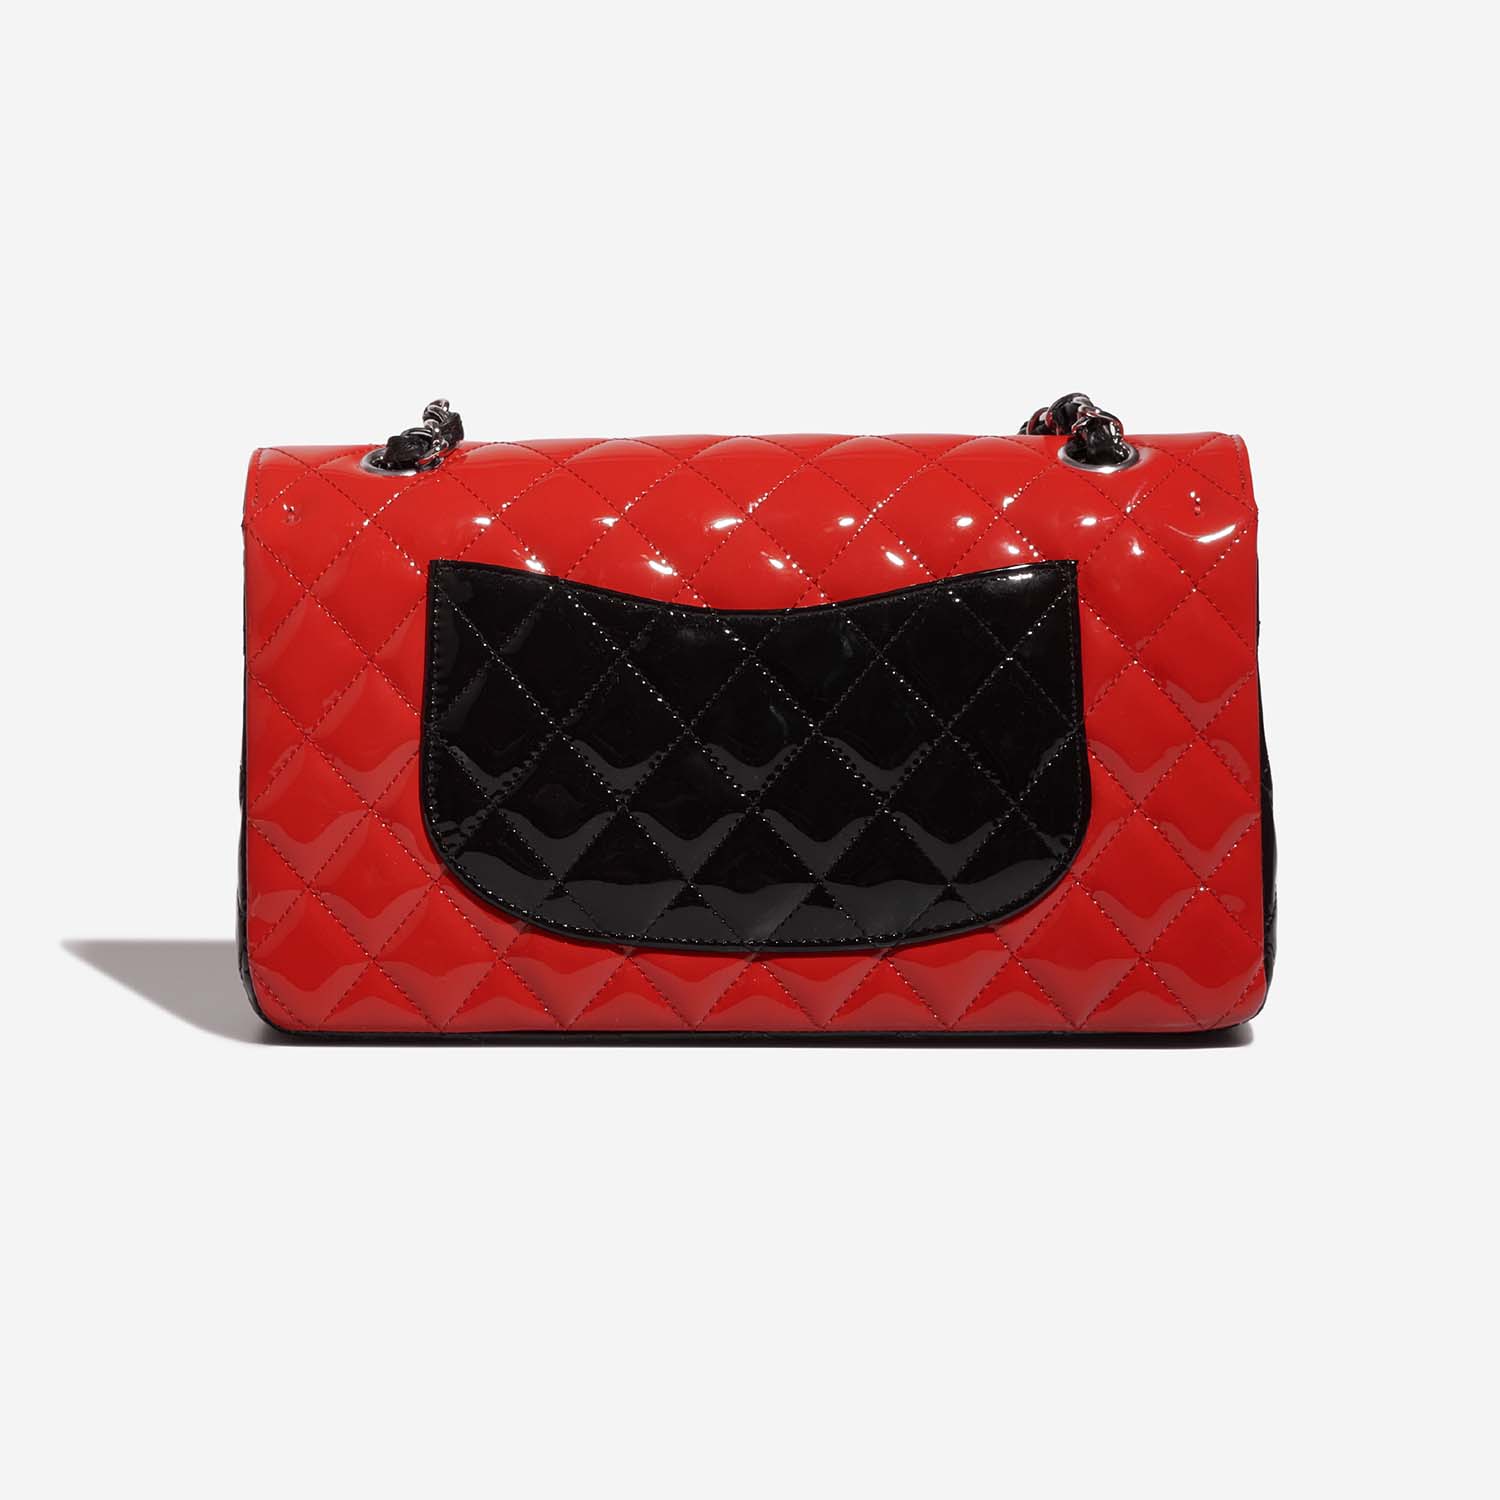 Chanel Timeless Medium Black-Red Back | Verkaufen Sie Ihre Designer-Tasche auf Saclab.com